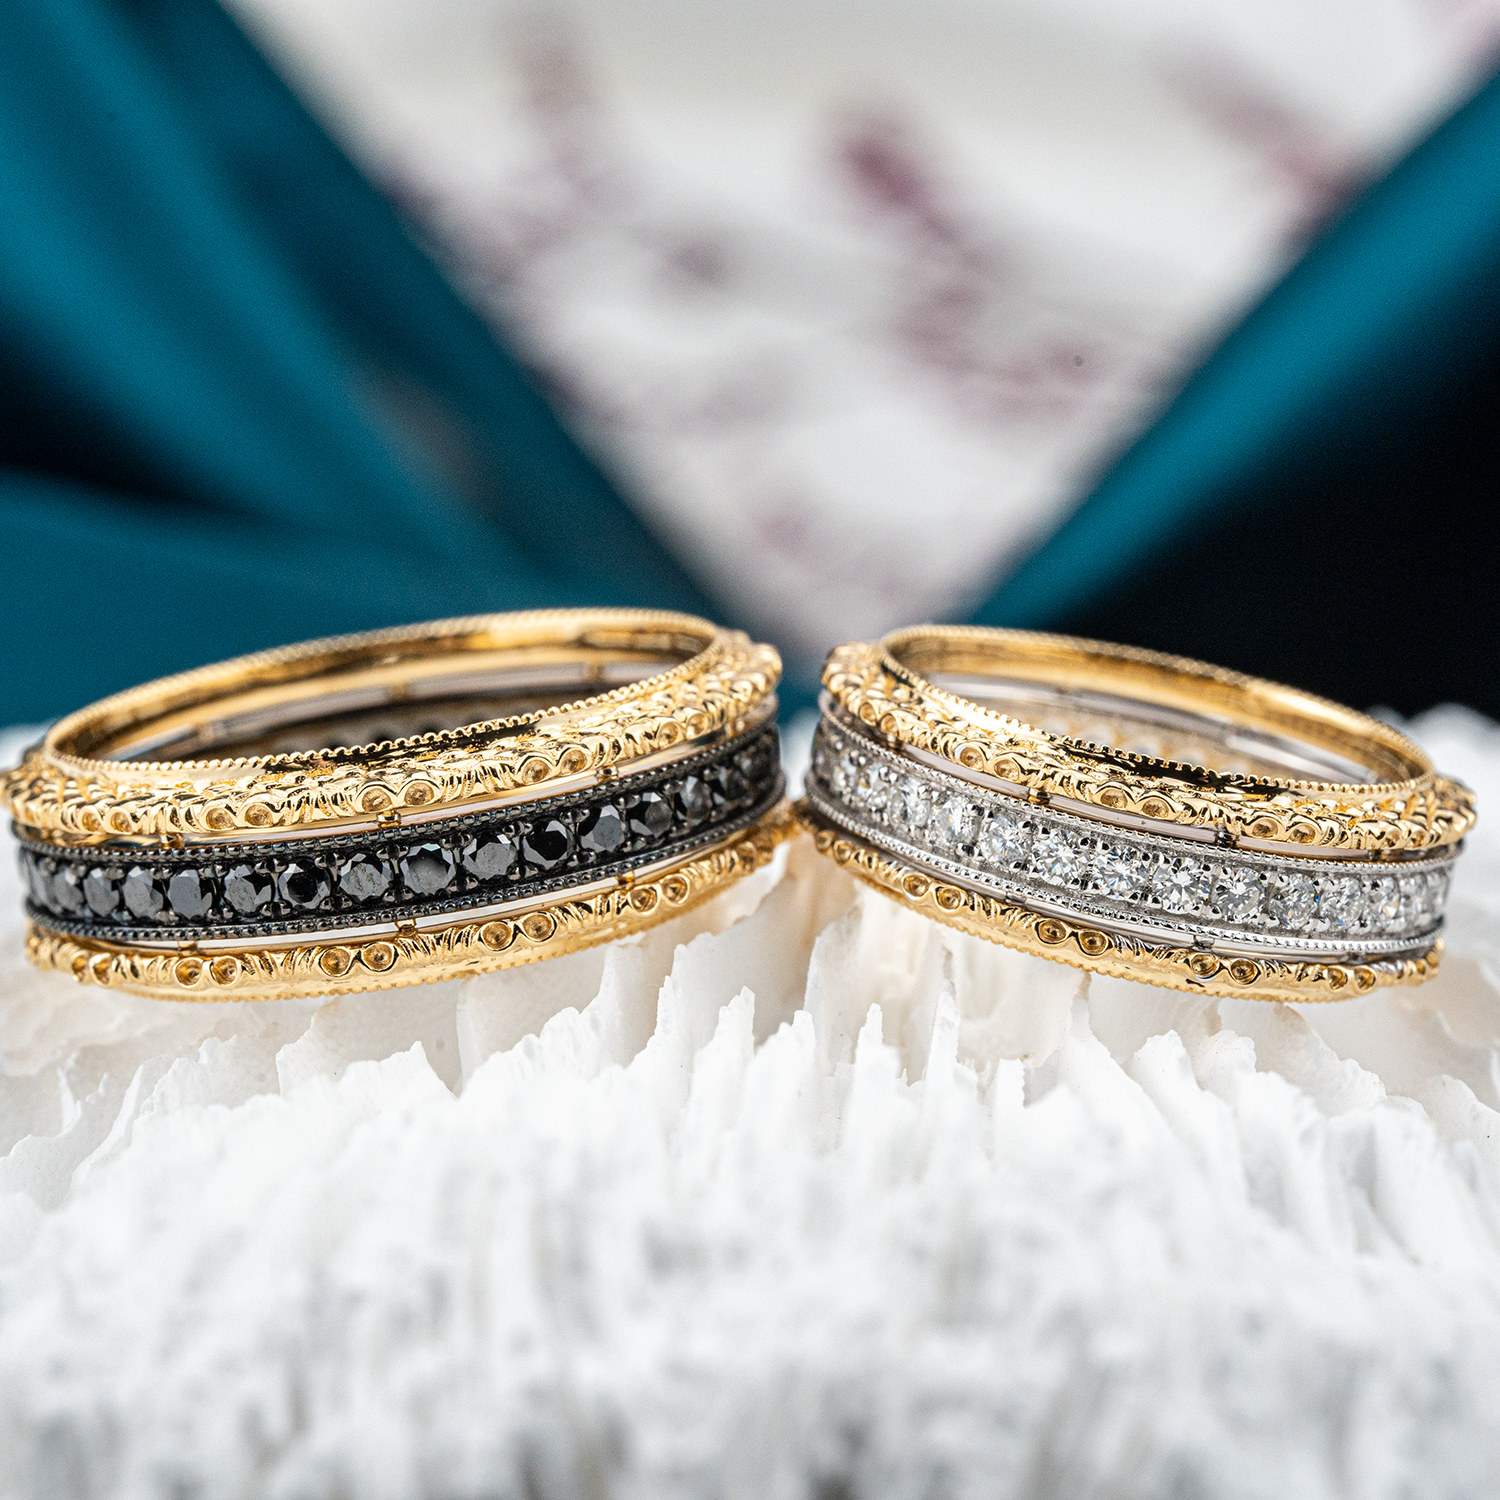 Luxurious Diamond Couple Rings, Combination of Black Diamonds and White Diamonds